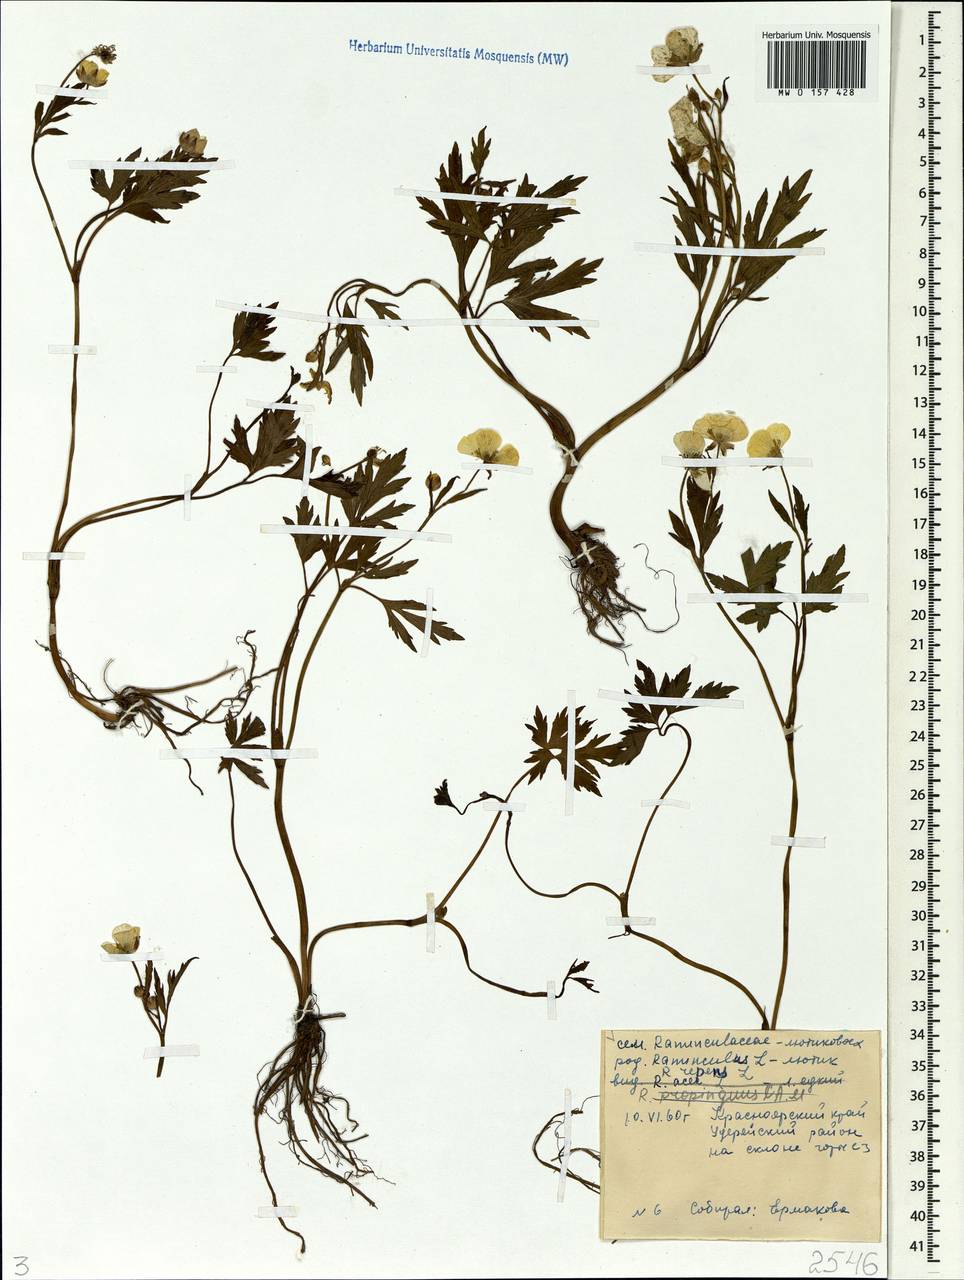 Ranunculus propinquus, Siberia, Central Siberia (S3) (Russia)